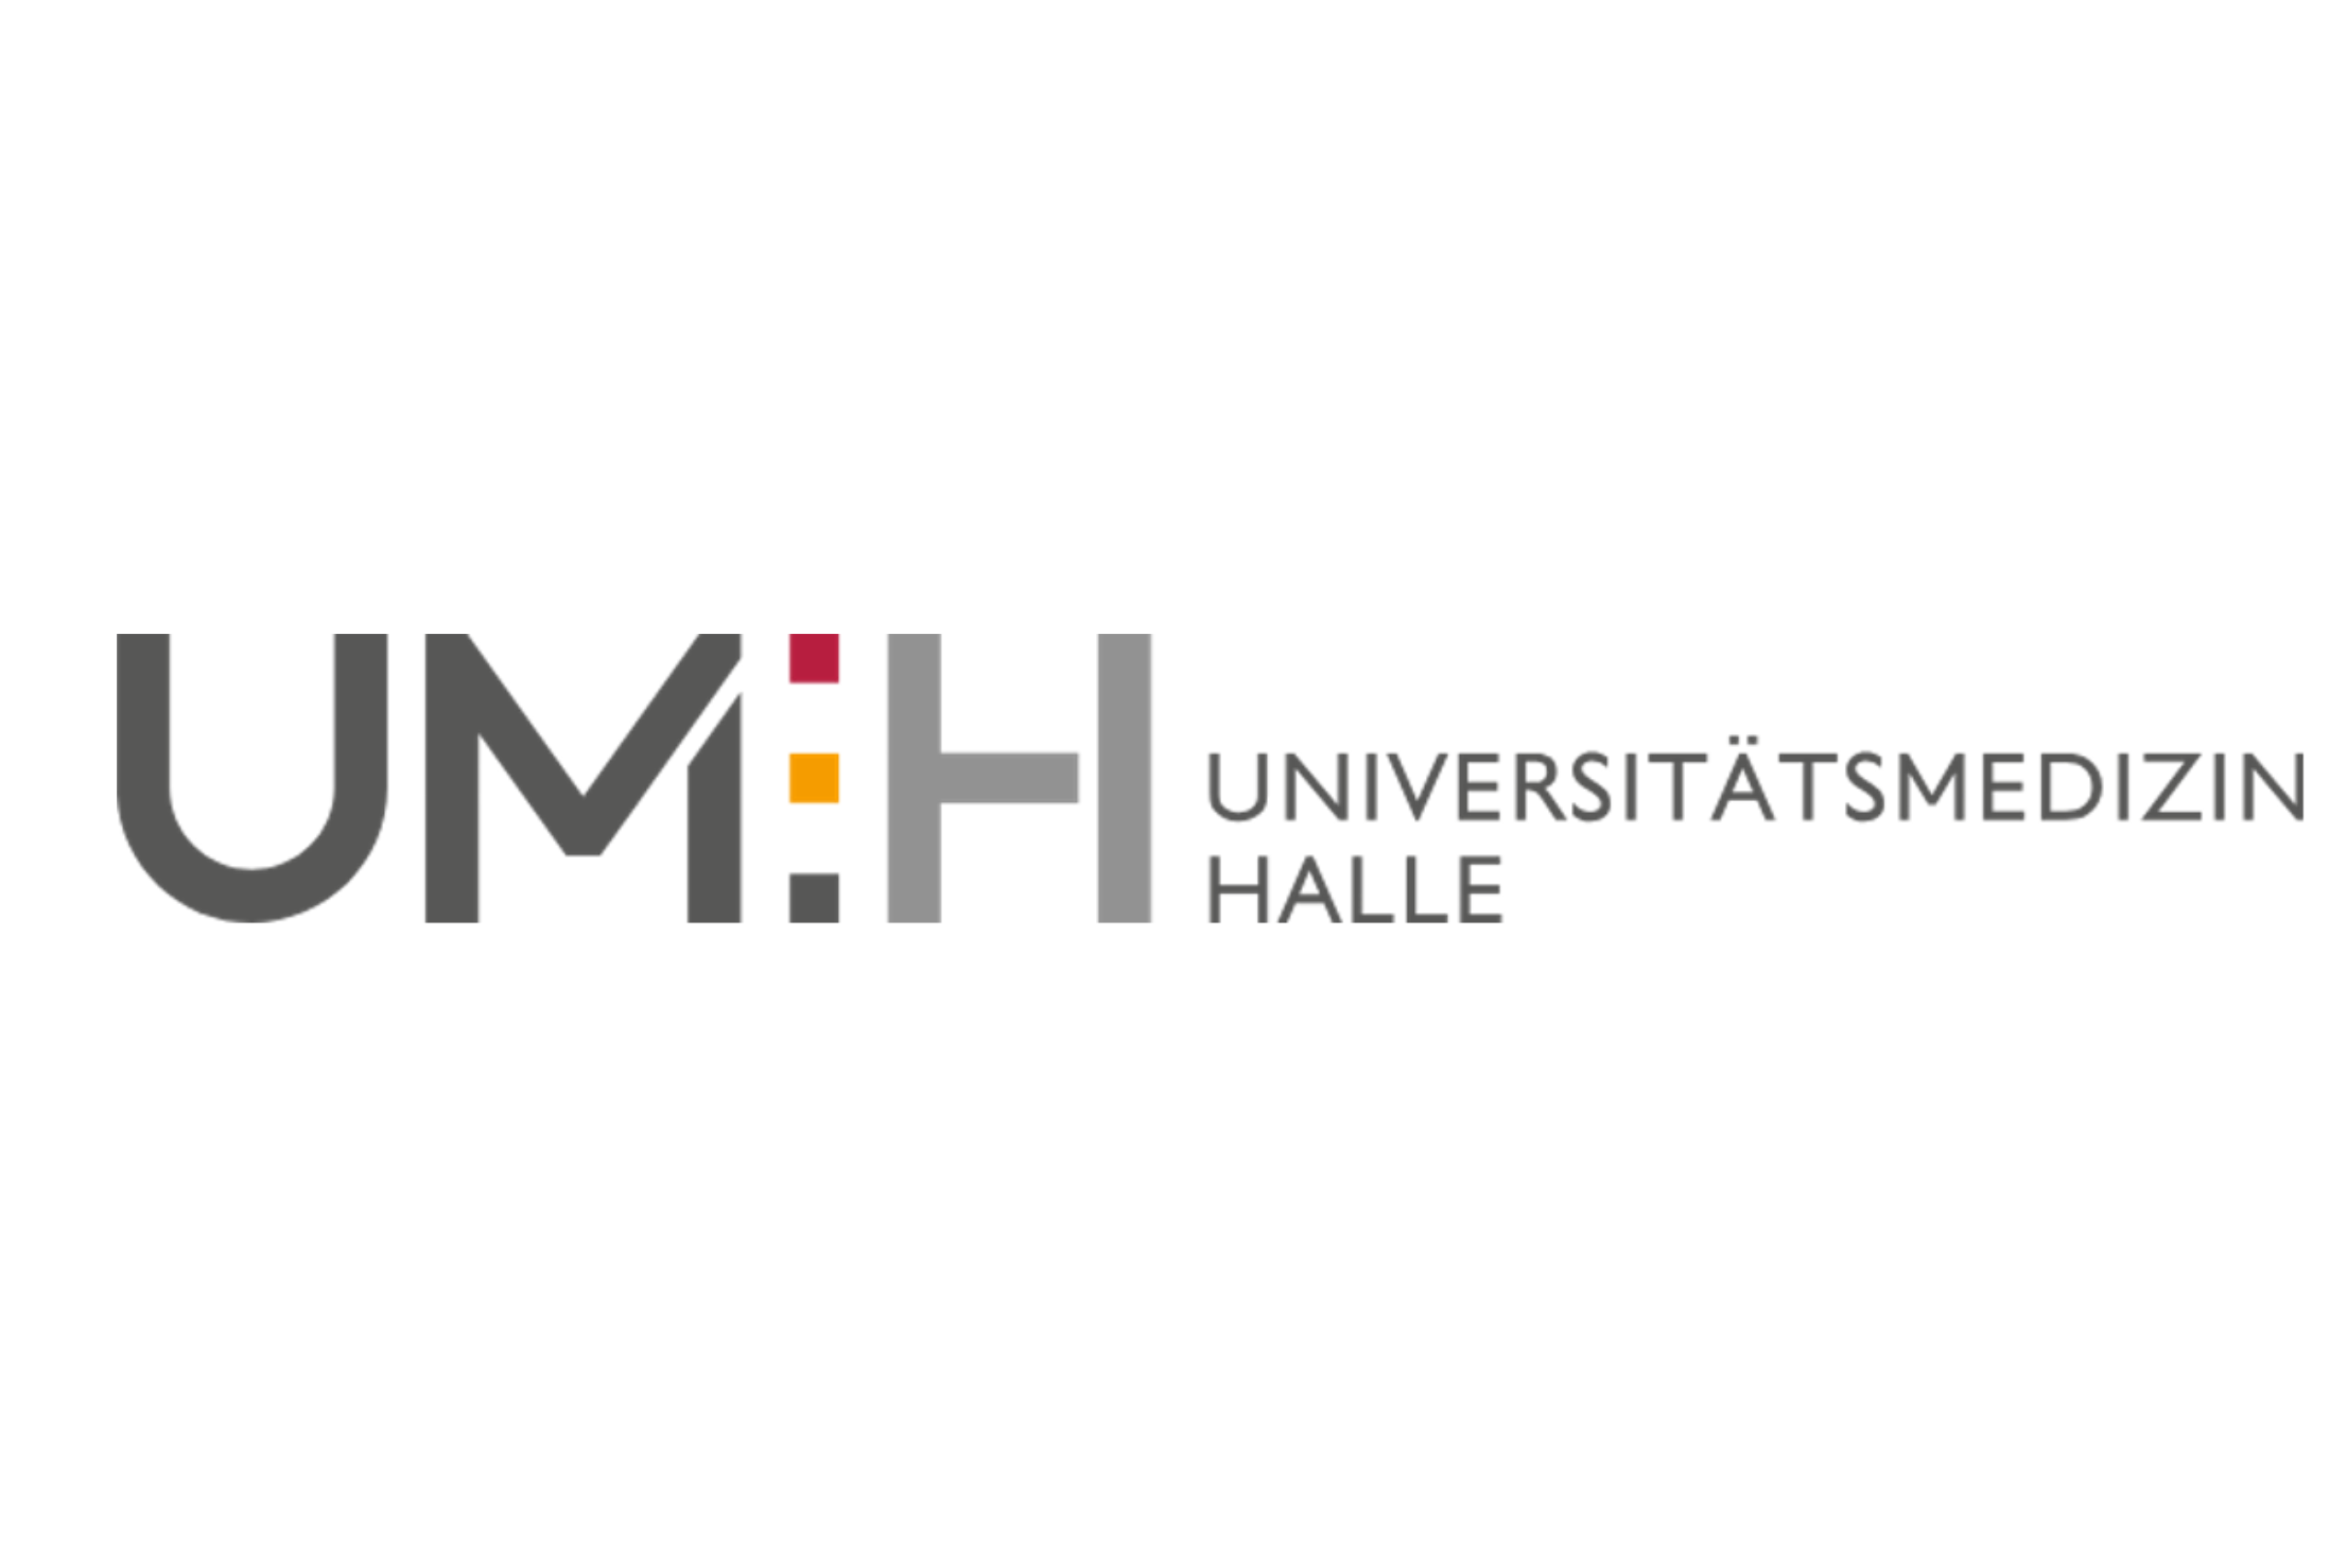 Schriftzug Universitätsmedizin Halle mit farbigen Pünktchen und Großbuchstaben UMH